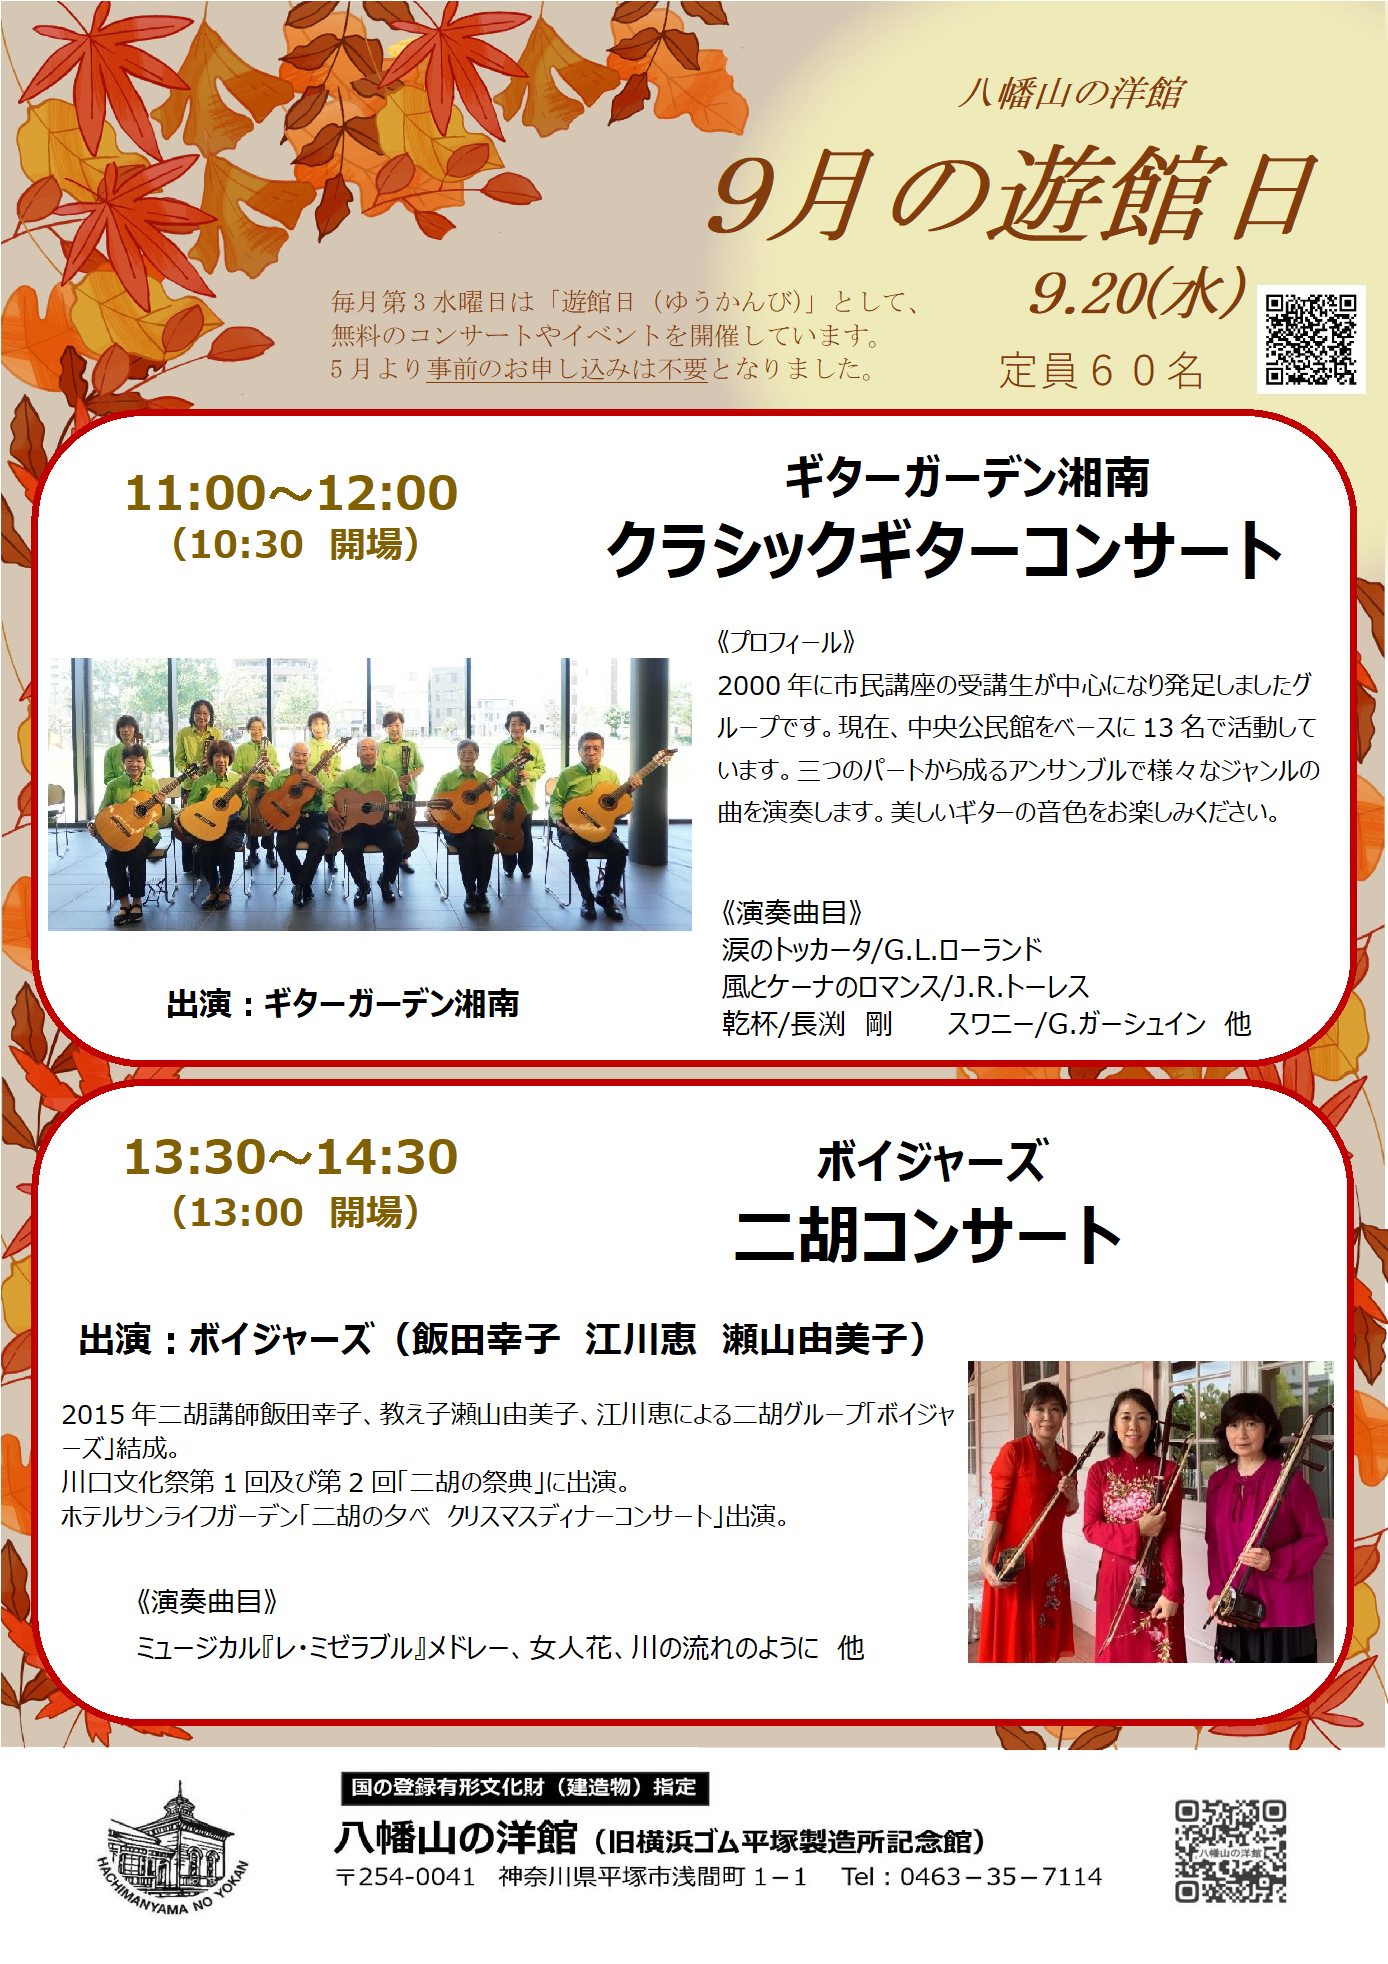 八幡山の洋館 9月遊館日 午前の部「ギターガーデン湘南 クラシックギターコンサート」、午後の部「ボイジャーズ 二胡コンサート」のポスター